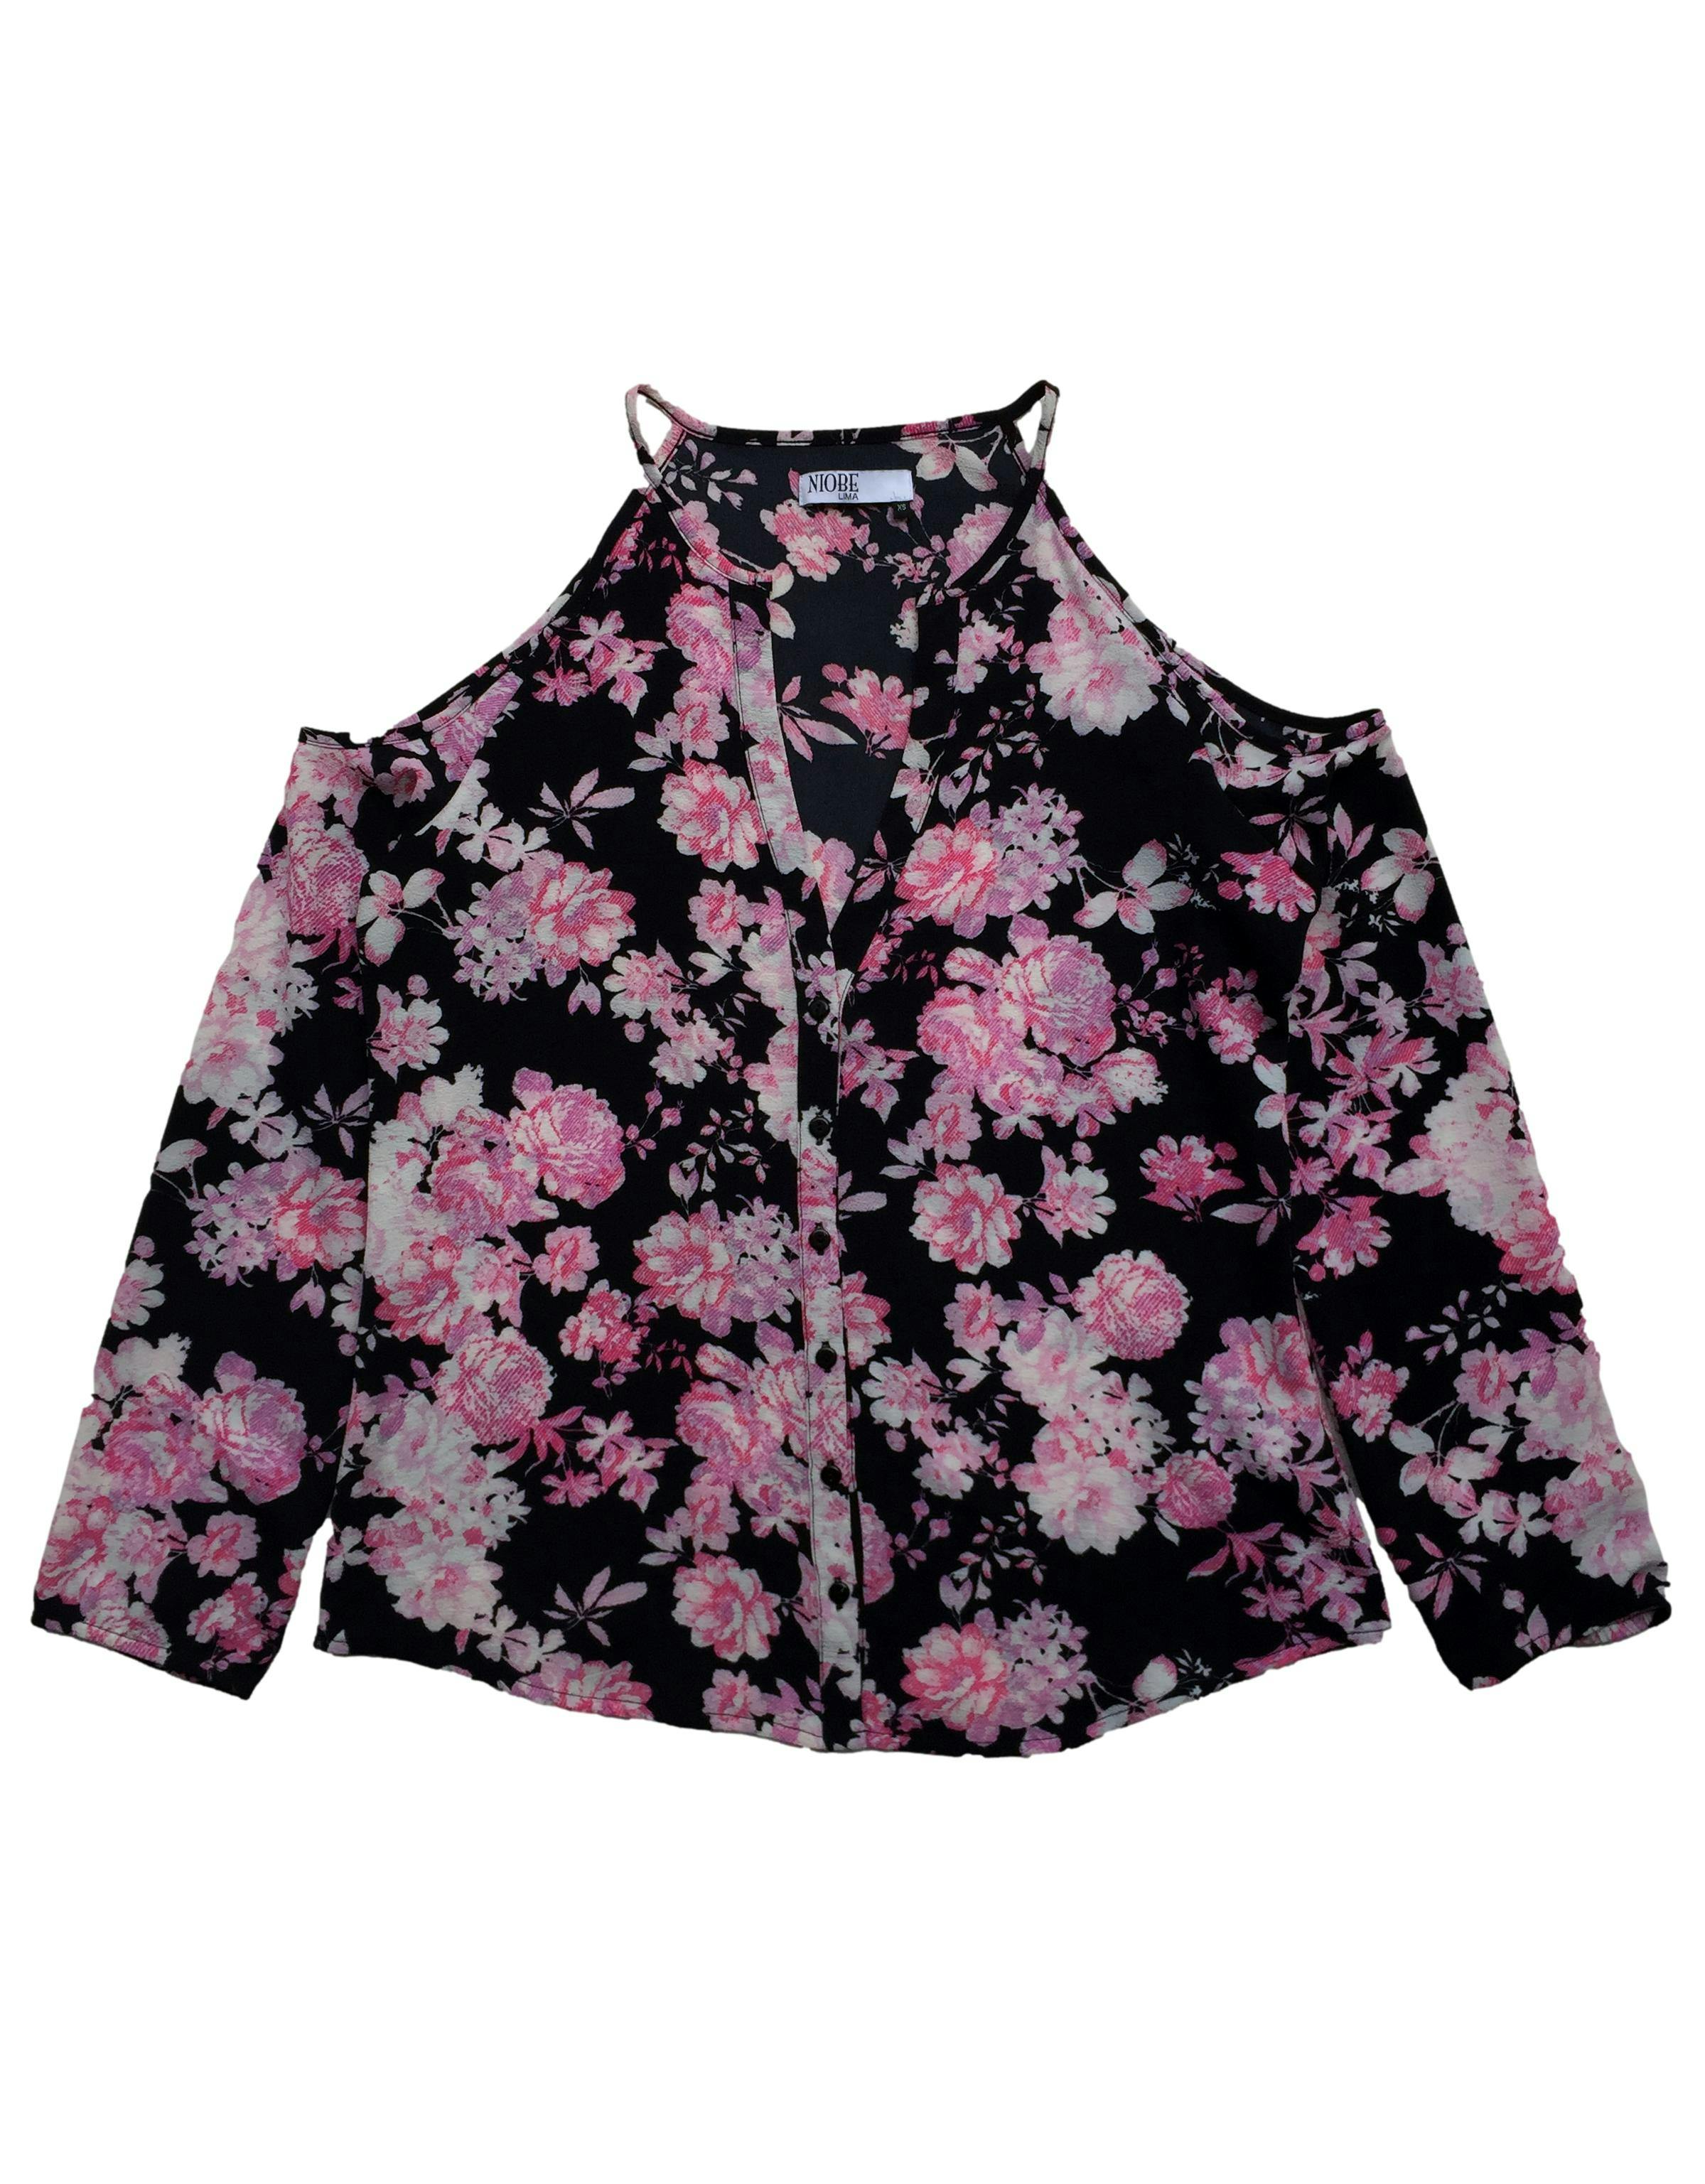 Blusa offshoulder negra con flores rosadas, botones delanteros. Busto: 94cm, Largo: 60cm